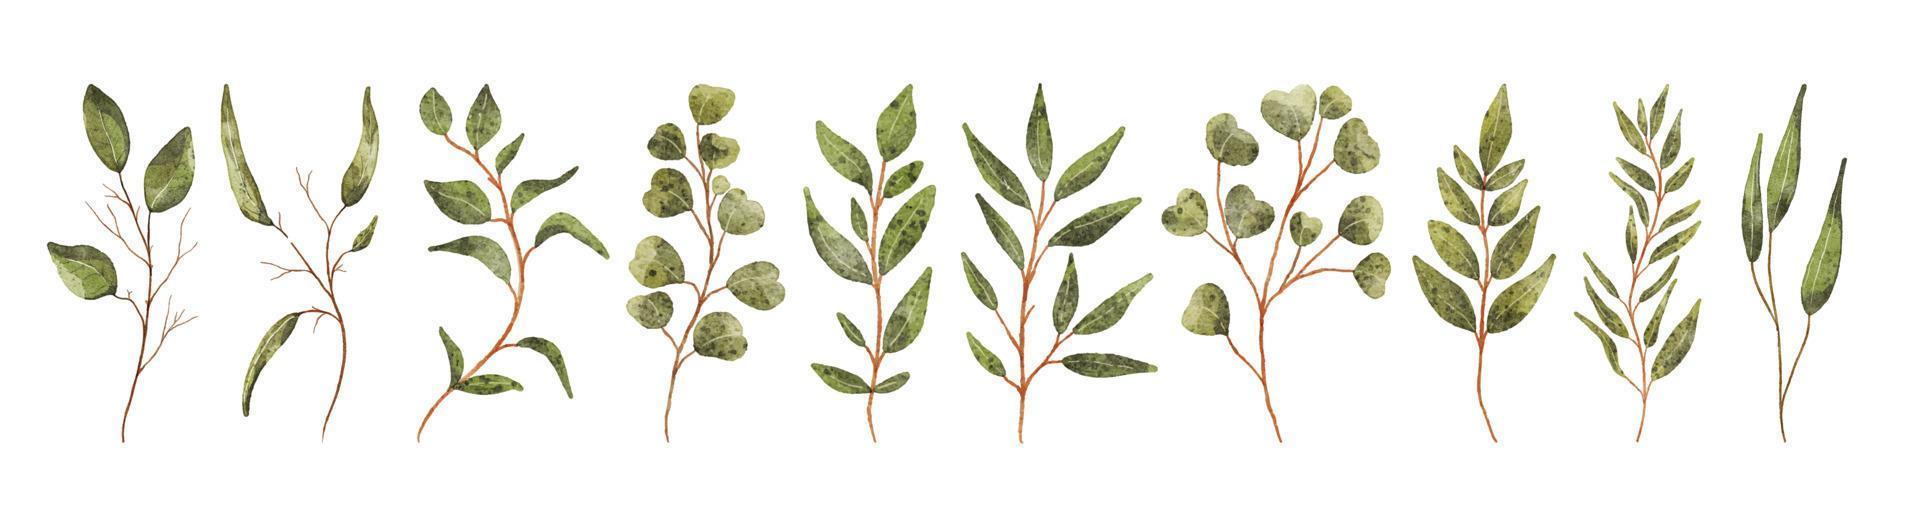 elementos de designer de vetor definir coleção de folhagem de arte verde floresta samambaia folhas naturais ervas em estilo aquarela.